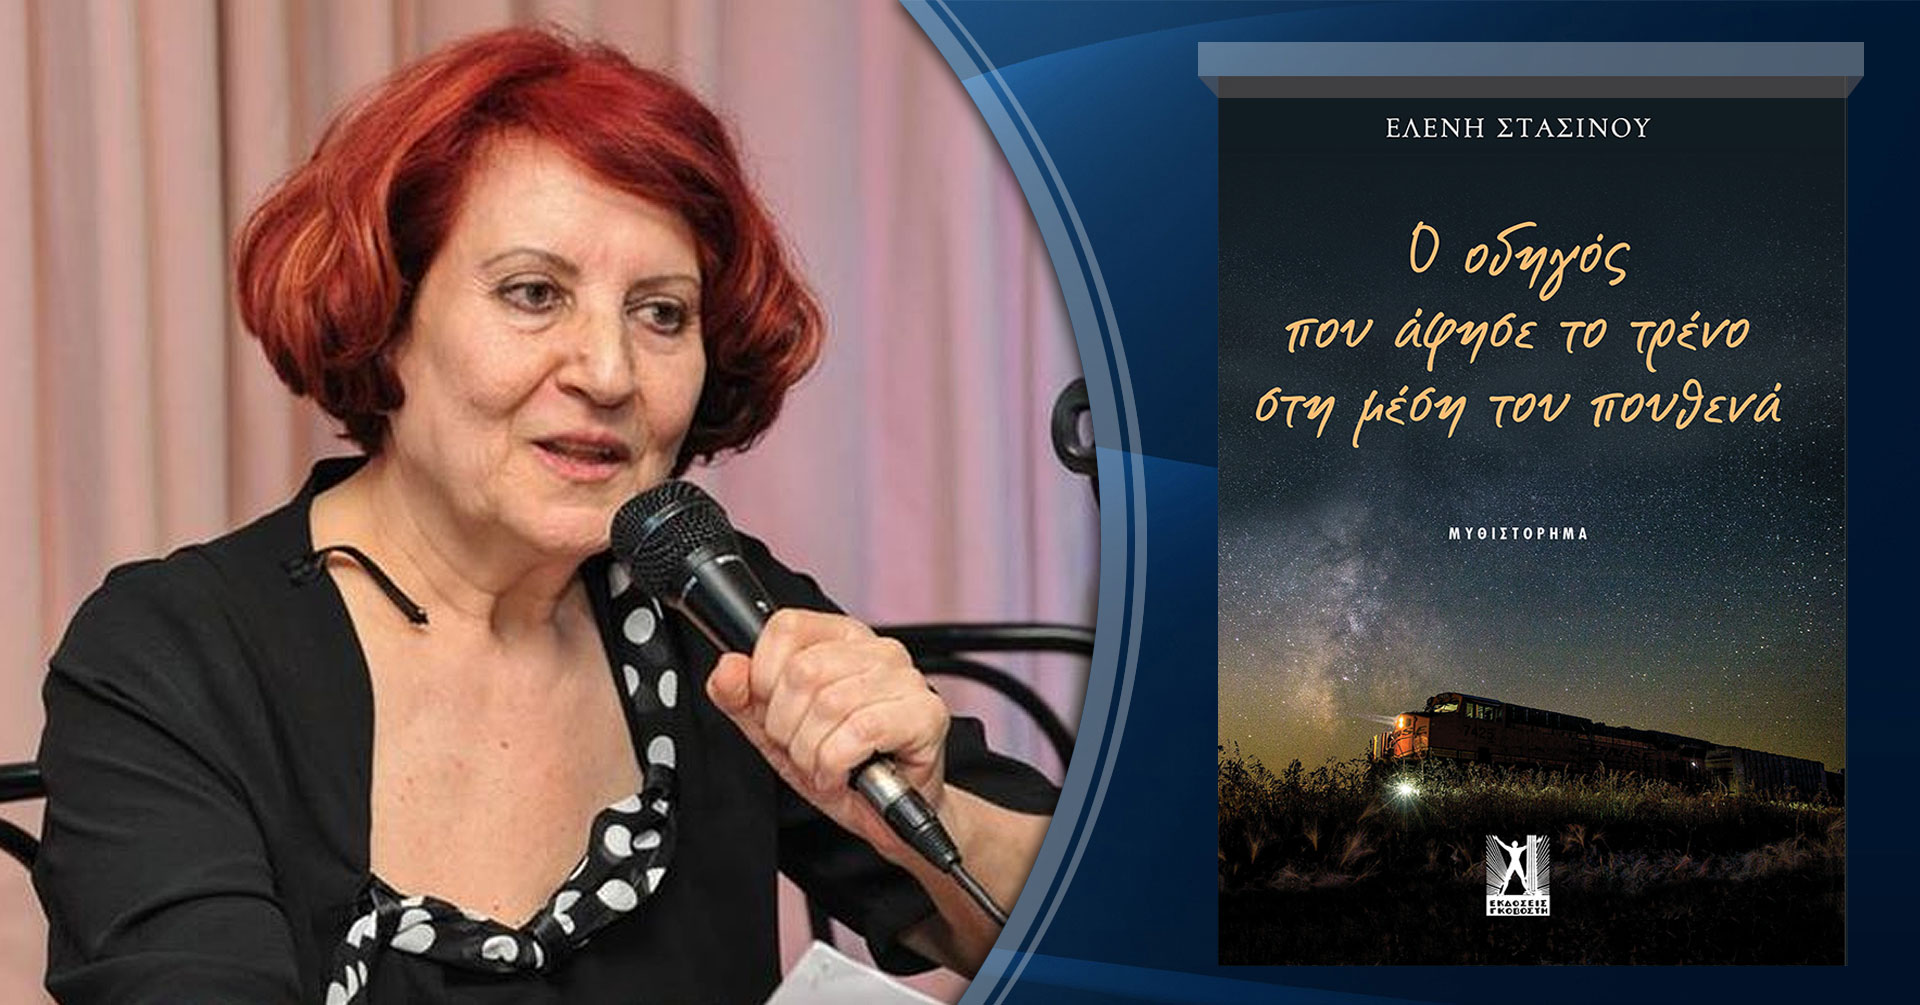 Ελένη Στασινού, μιλάει στην Μάγδα Παπαδημητρίου-Σαμοθράκη για το «Ο οδηγός που άφησε το τρένο στη μέση του πουθενά»